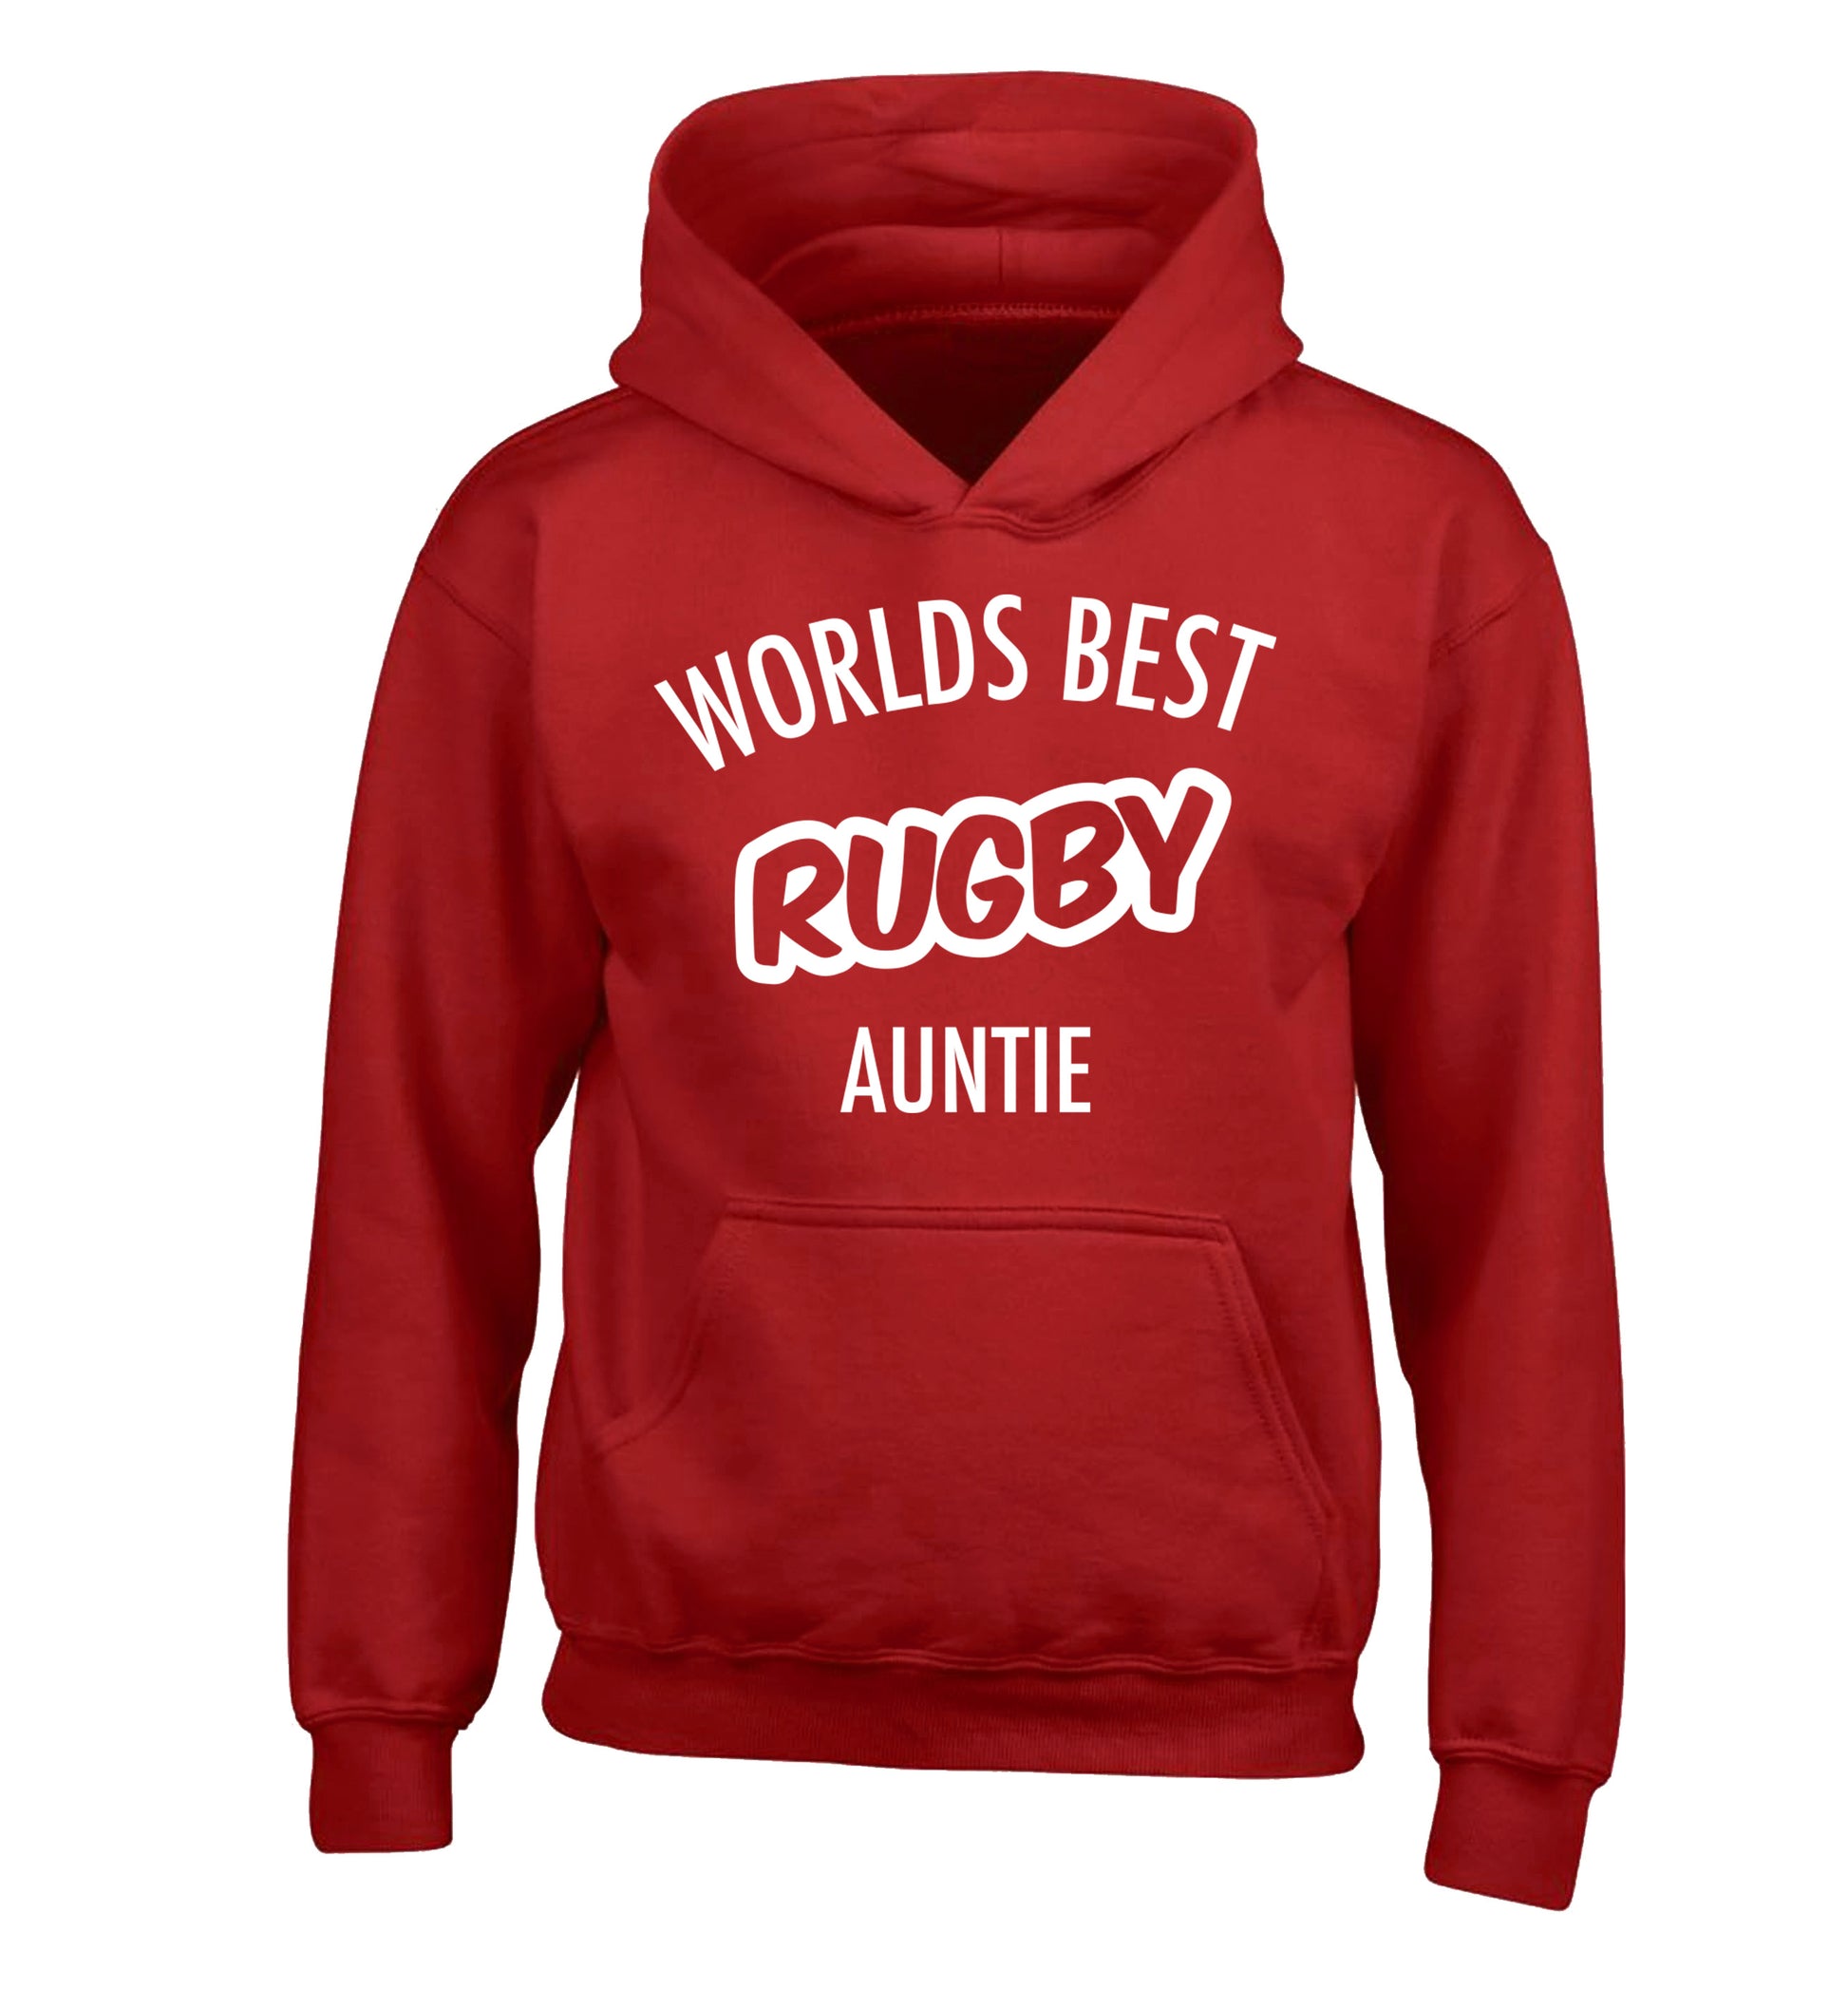 Worlds best rugby auntie children's red hoodie 12-13 Years